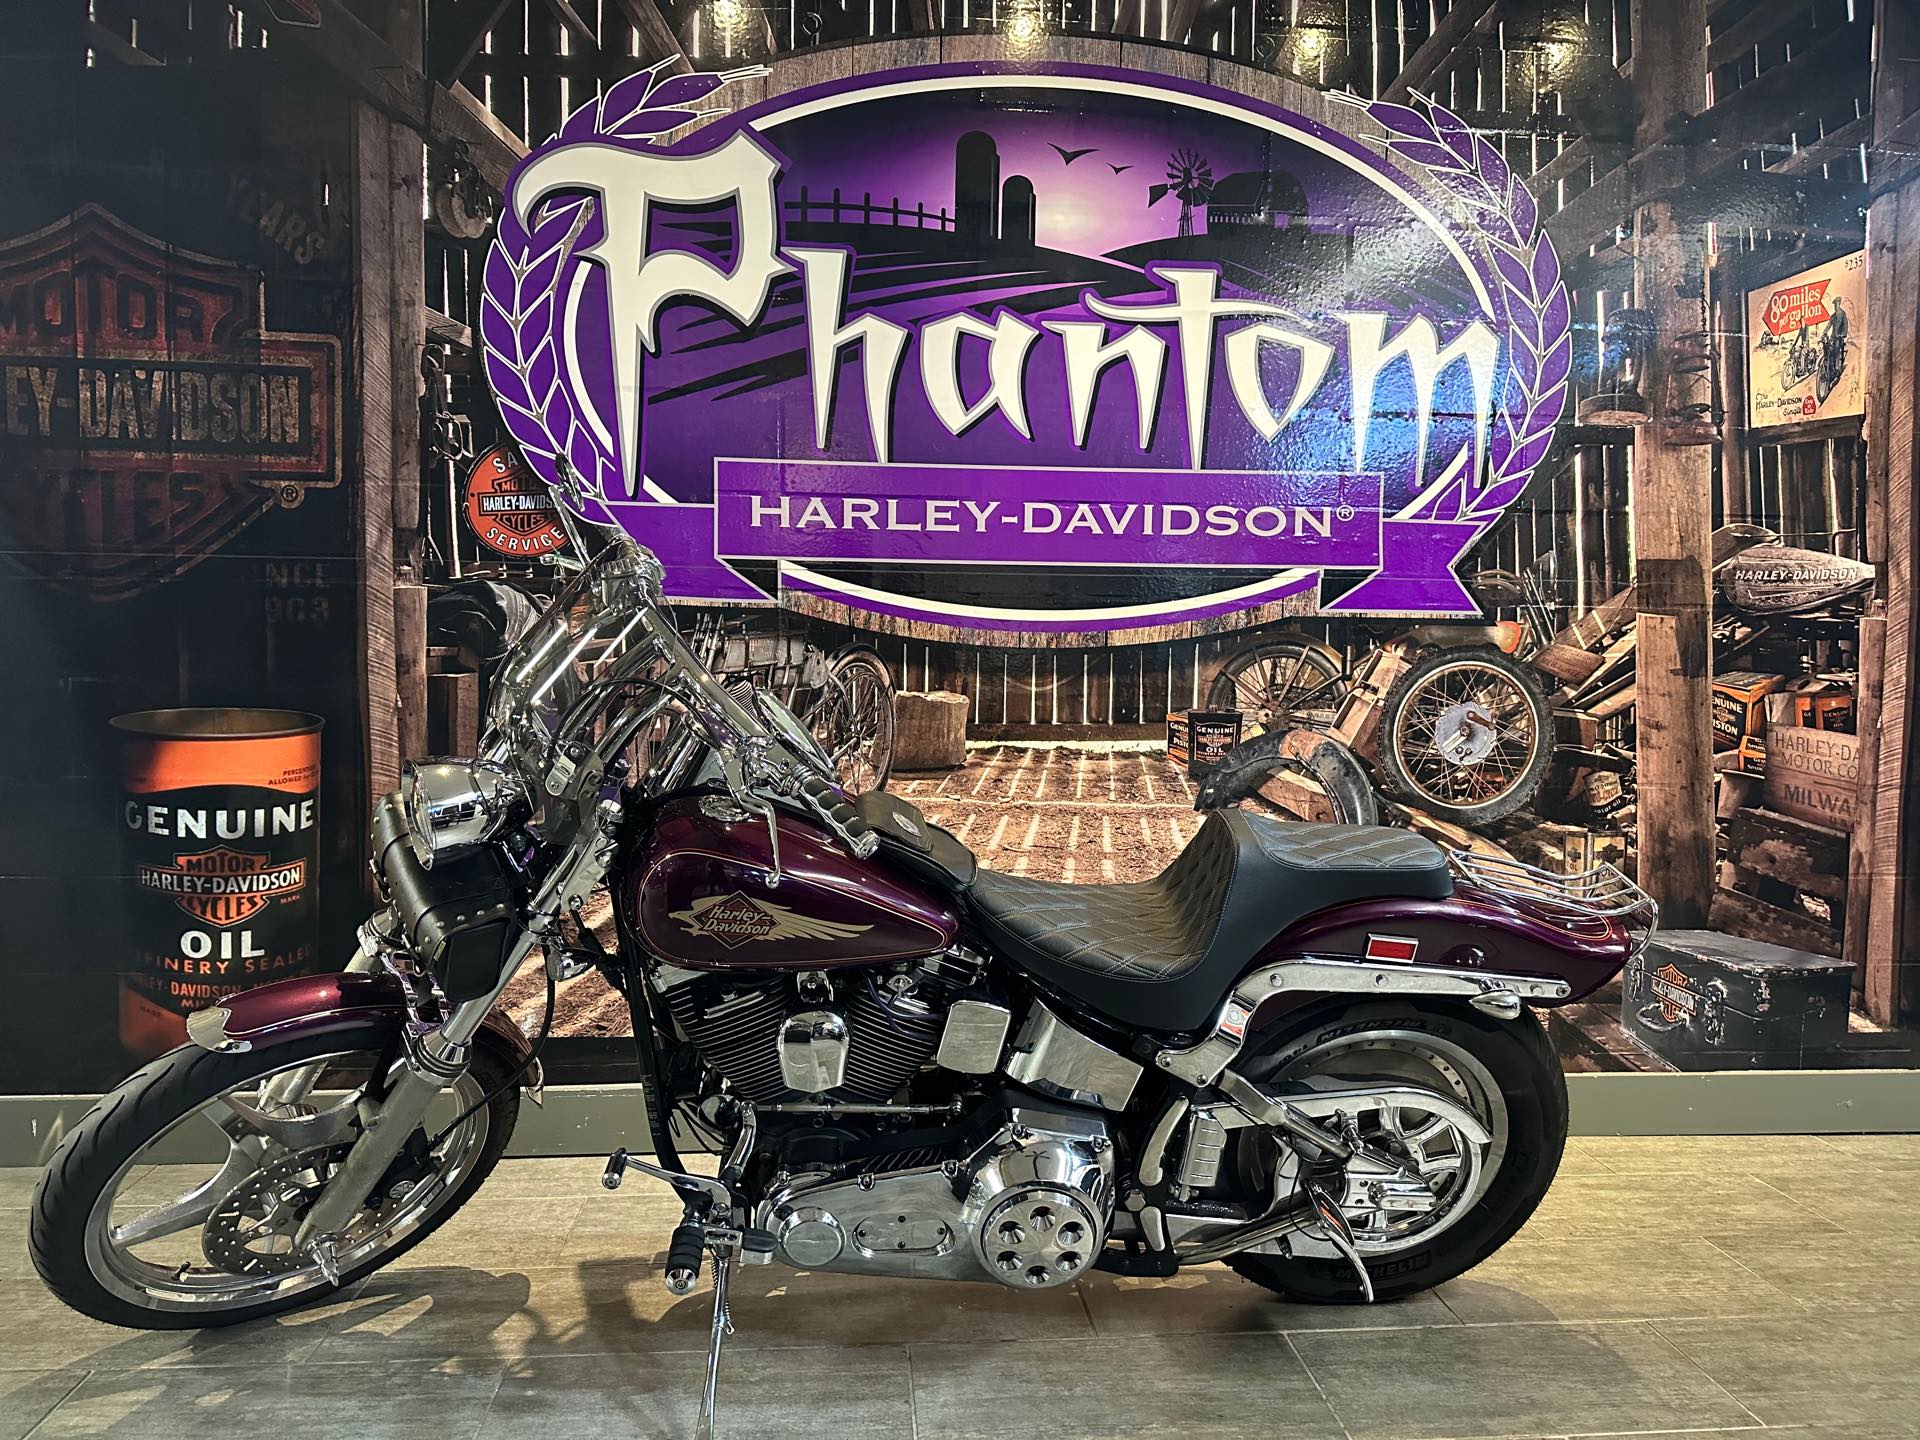 1997 Harley-Davidson FXSTC at Phantom Harley-Davidson